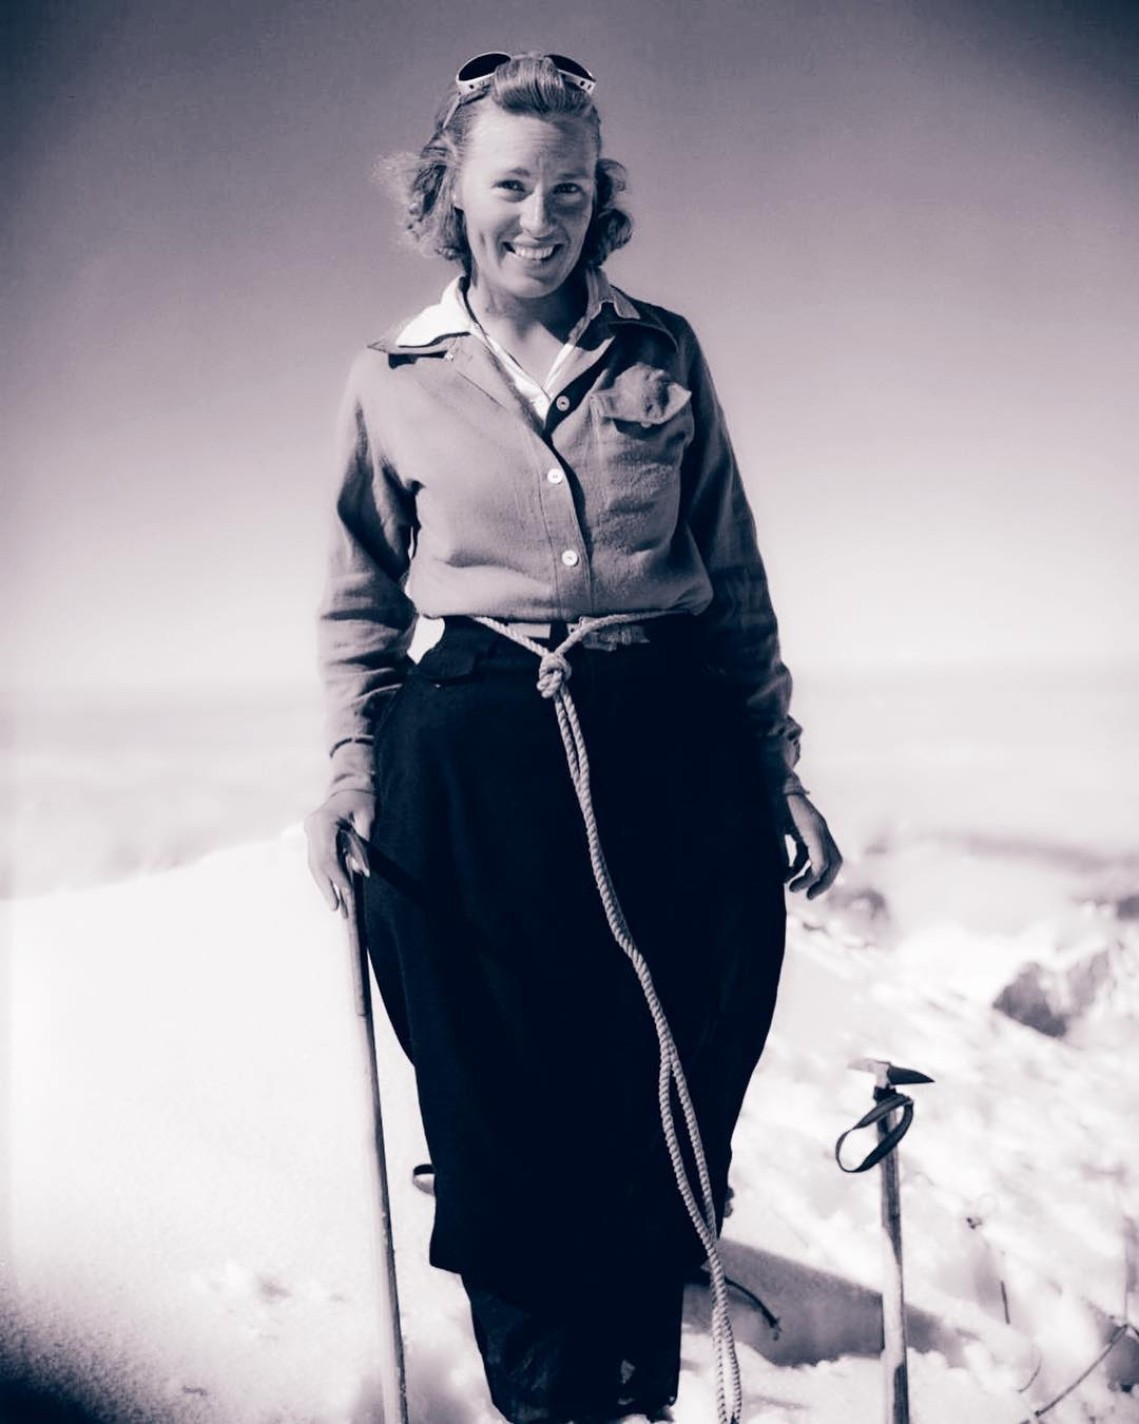 Barbara Washburn: Η άγνωστη ιστορία της γυναίκας που χαρτογράφησε το Grand Canyon